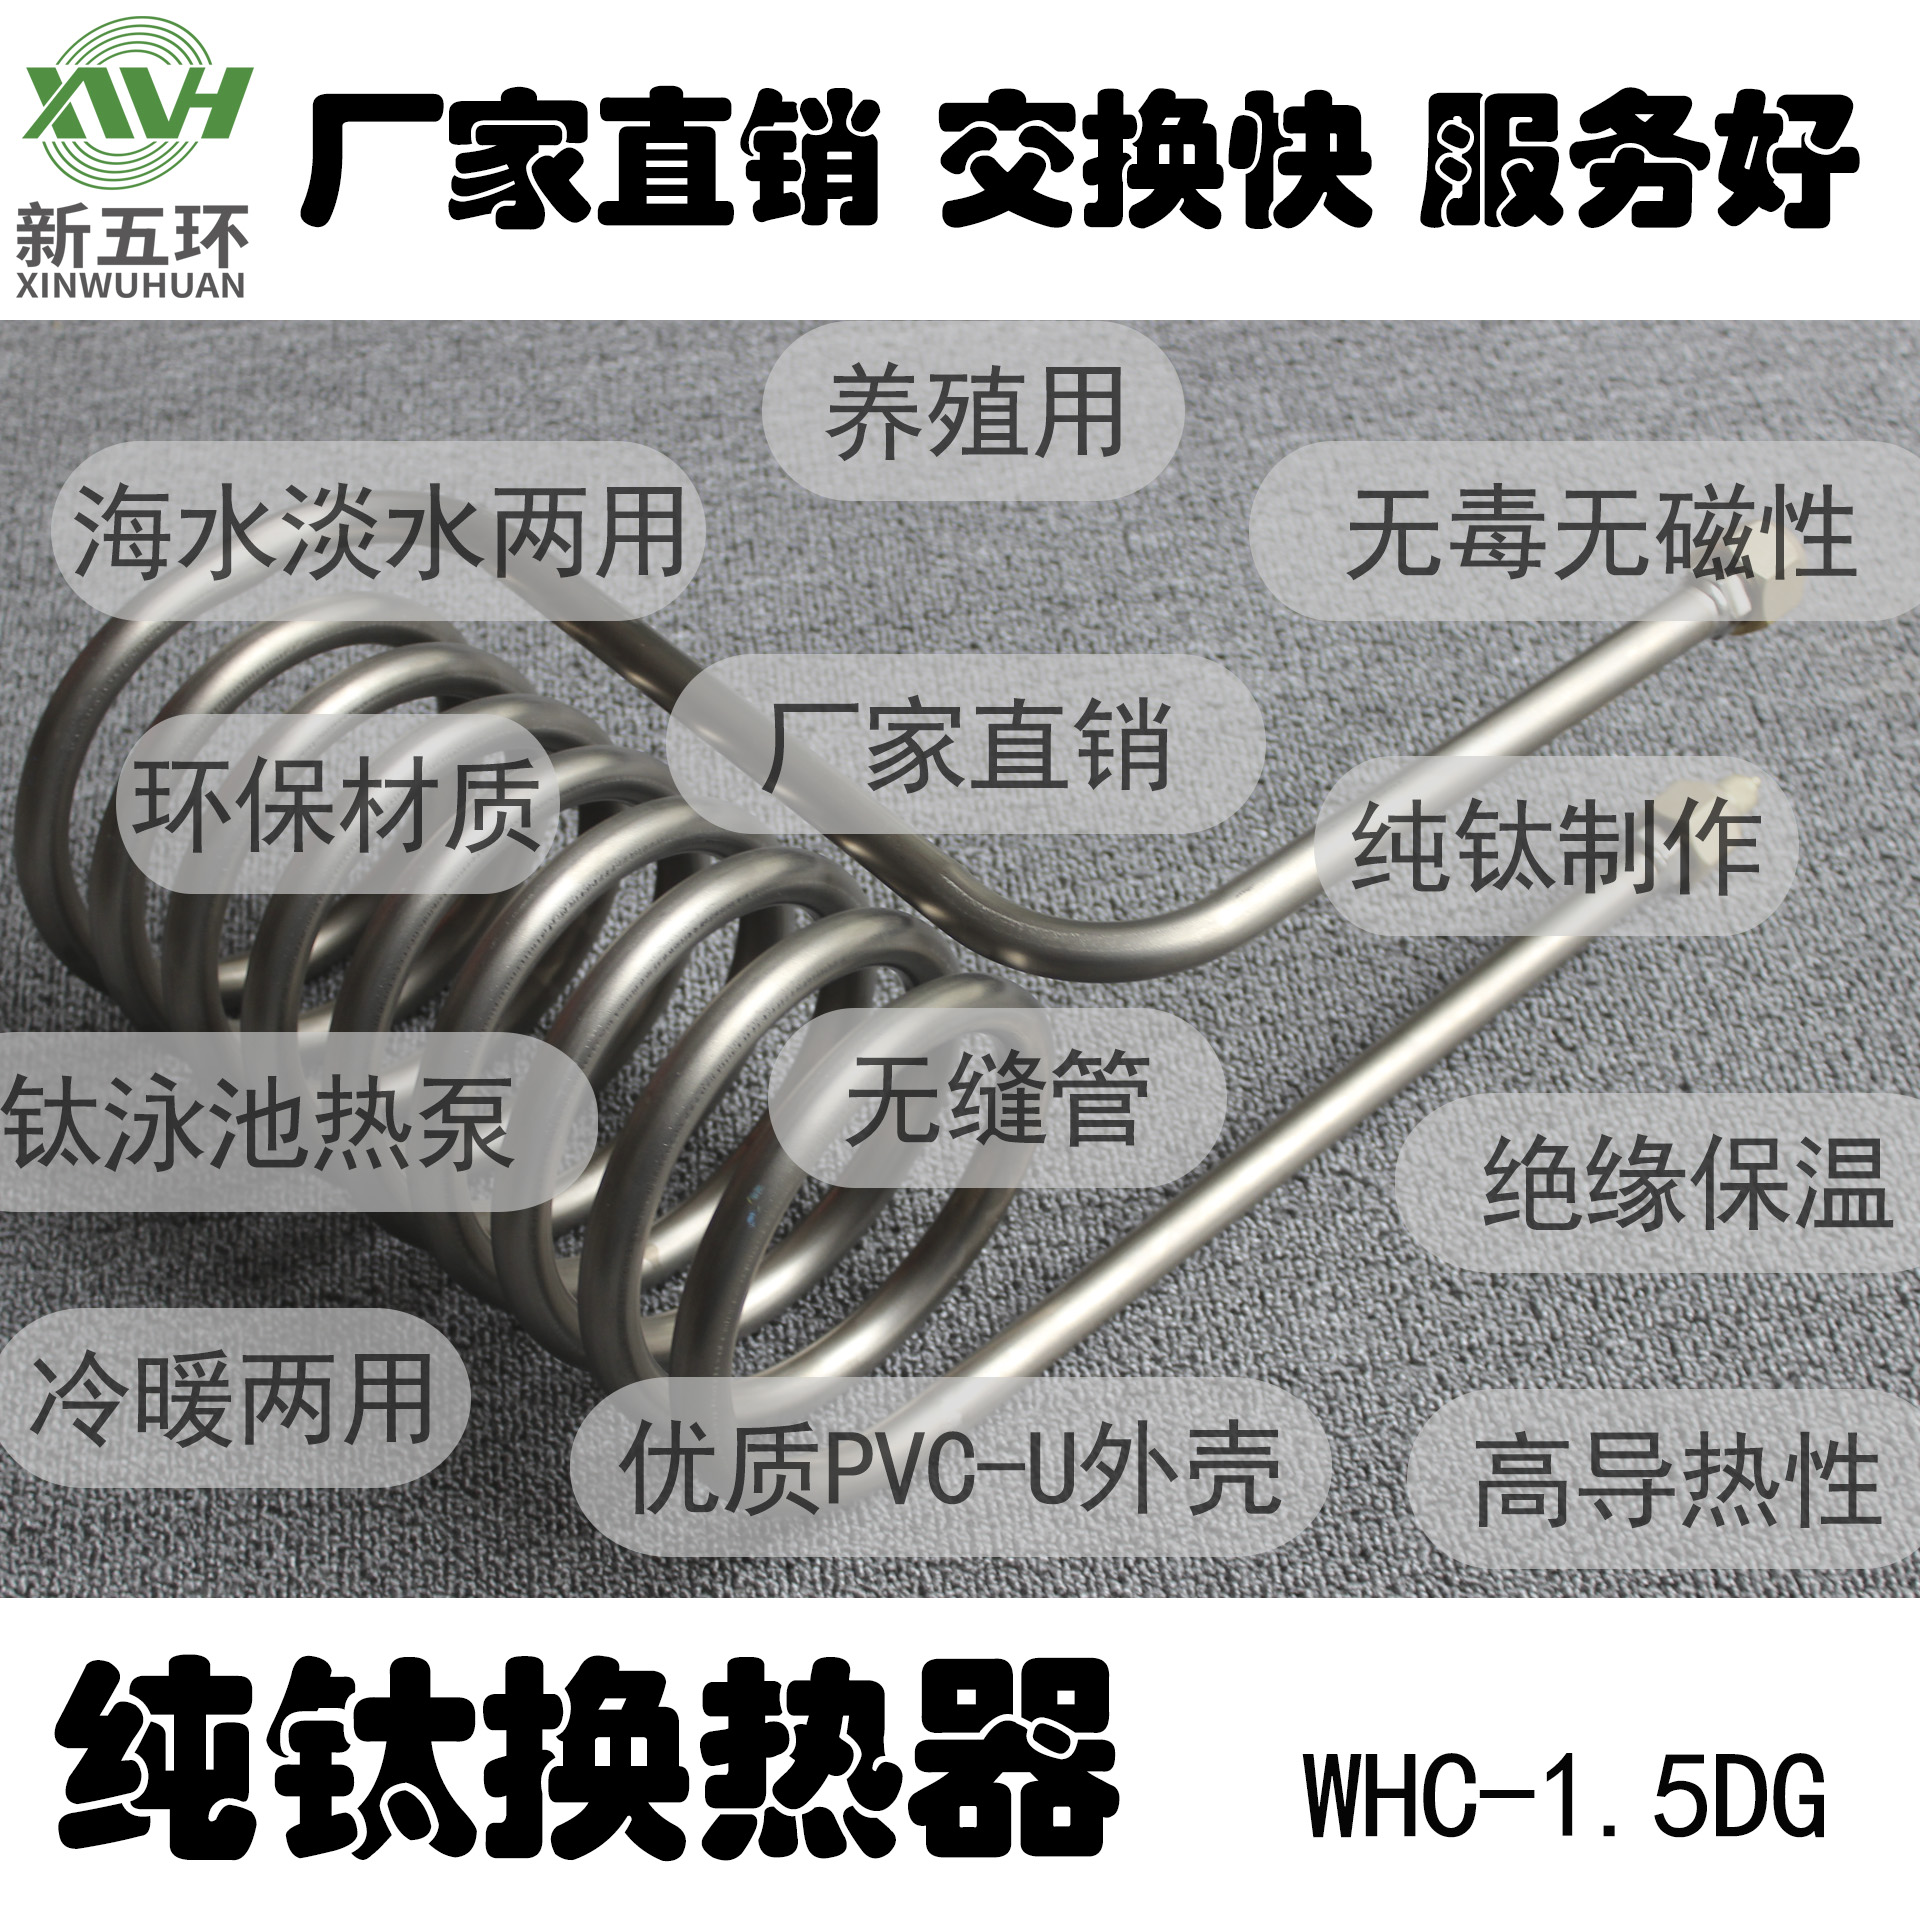 供应新五环WHC-1.5DG商场可拆板式换热器钎焊热交换器供暖空调